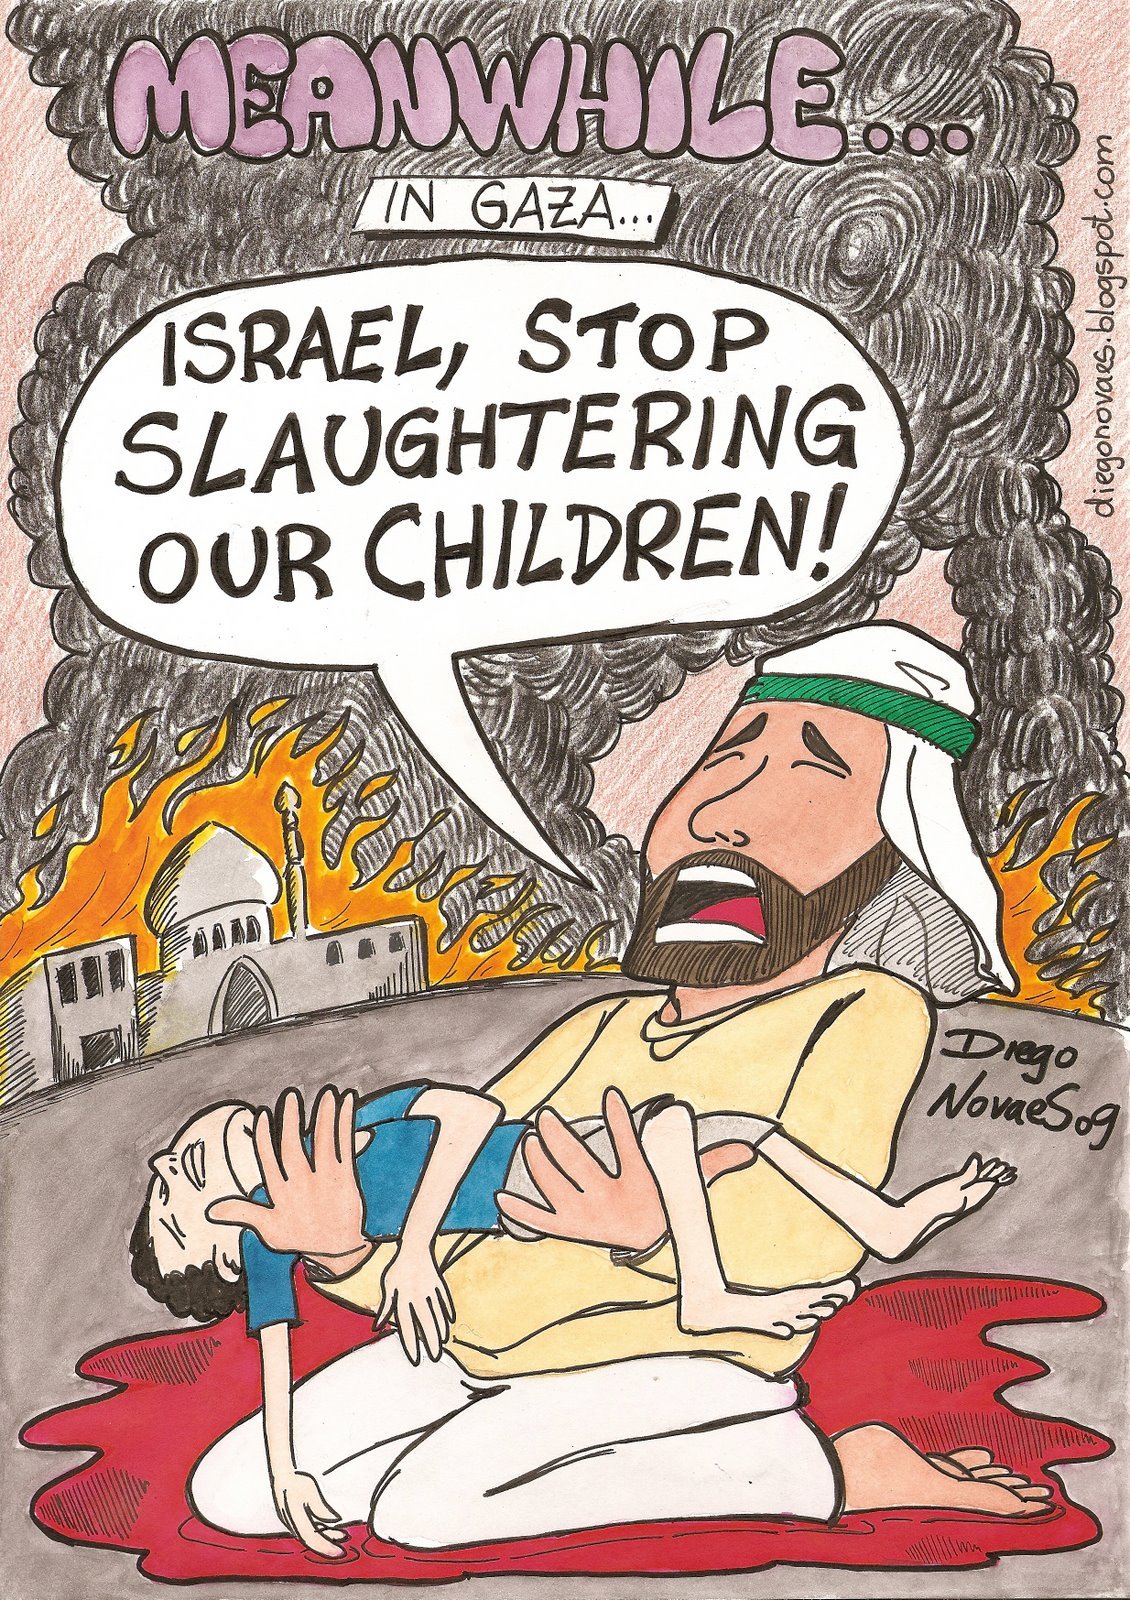 Child killed in Gaza